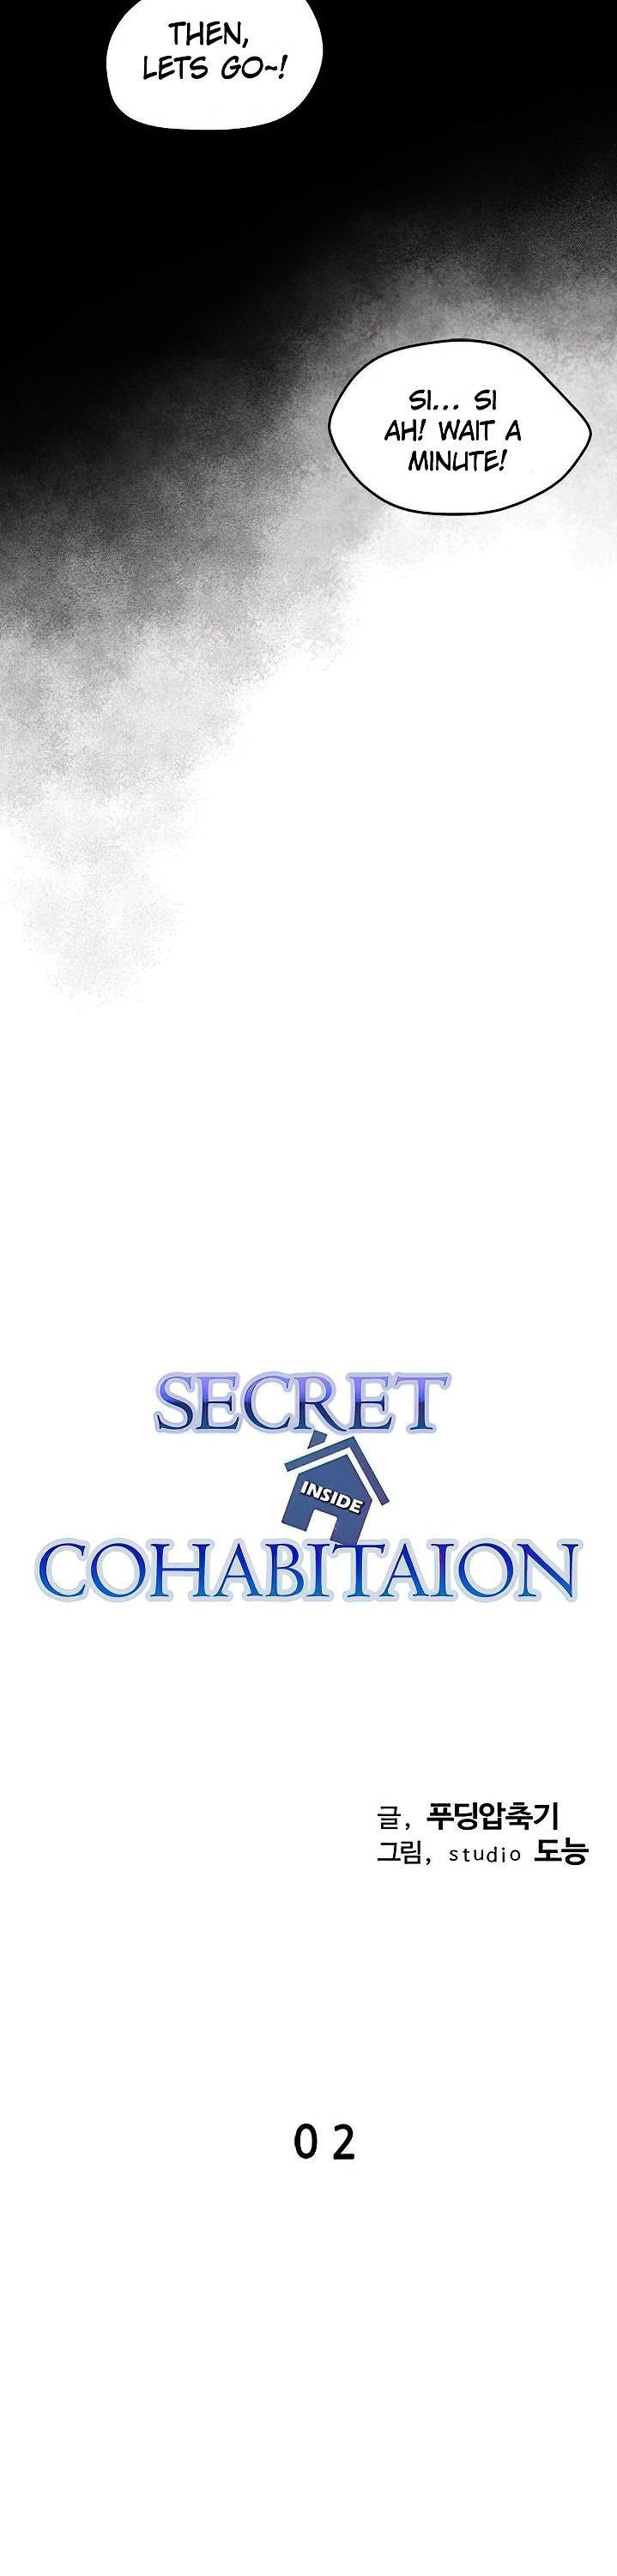 secret-cohabitation-chap-2-20